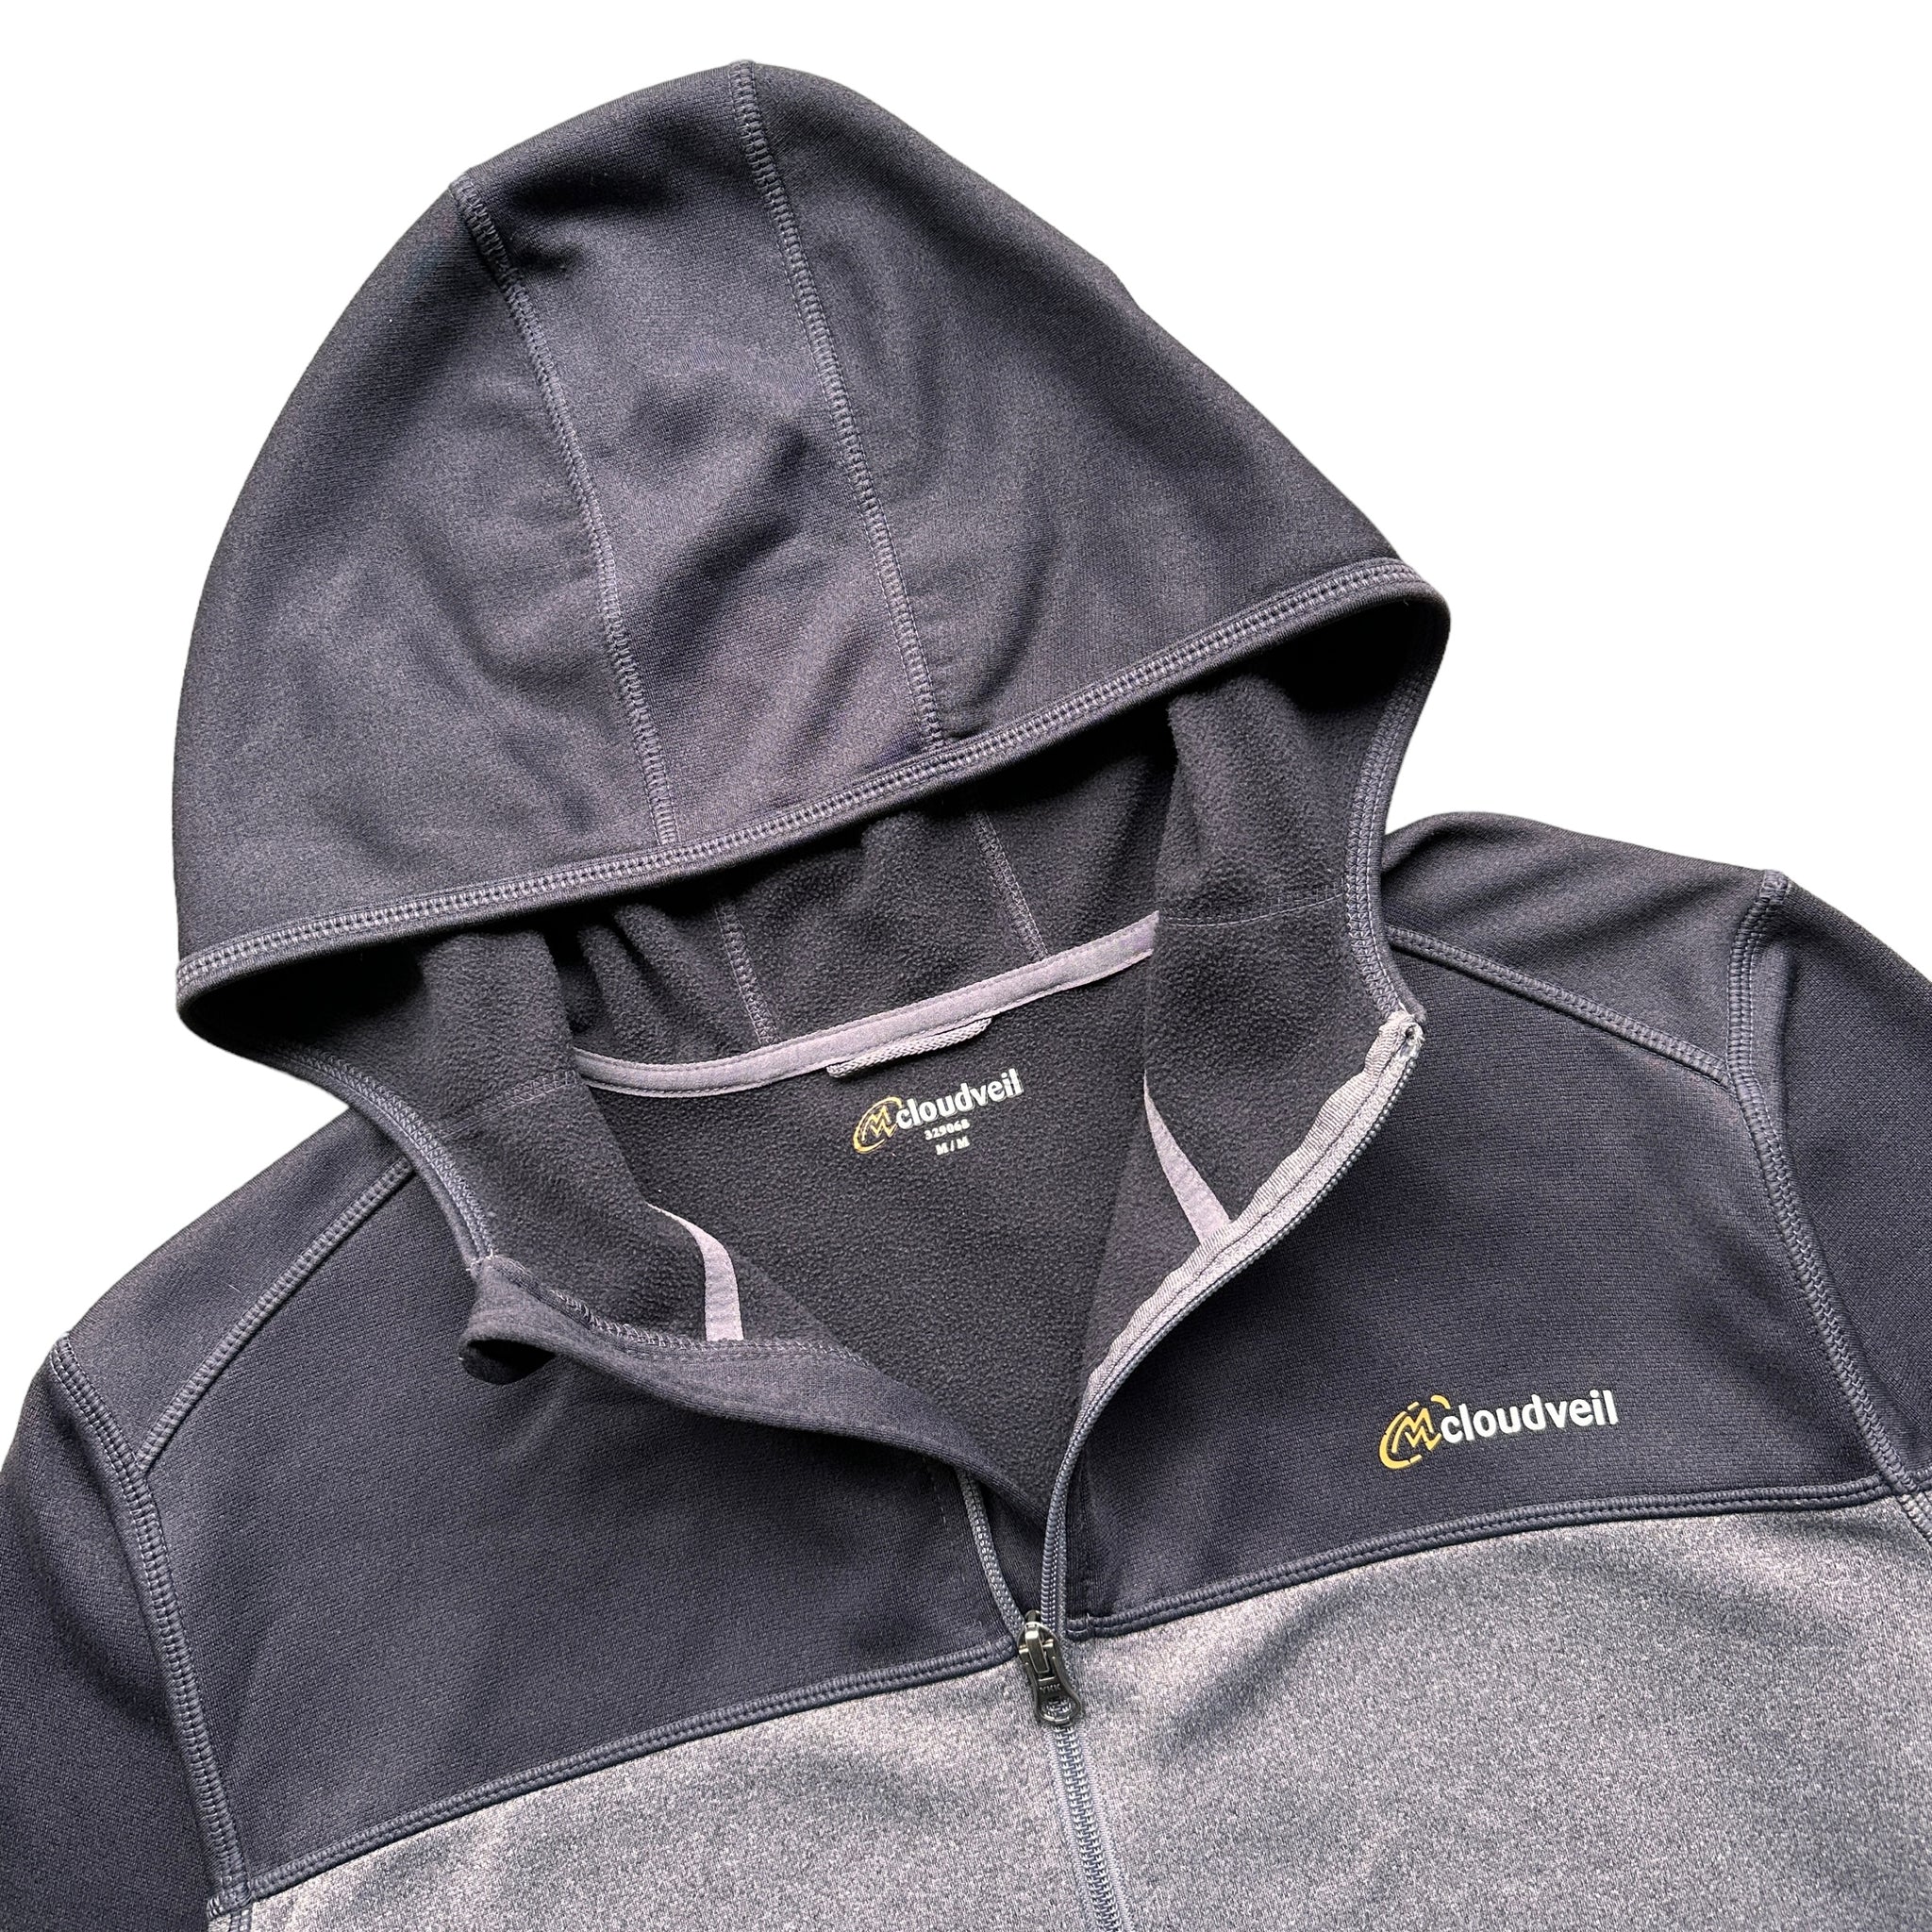 Cloudveil hoodie medium